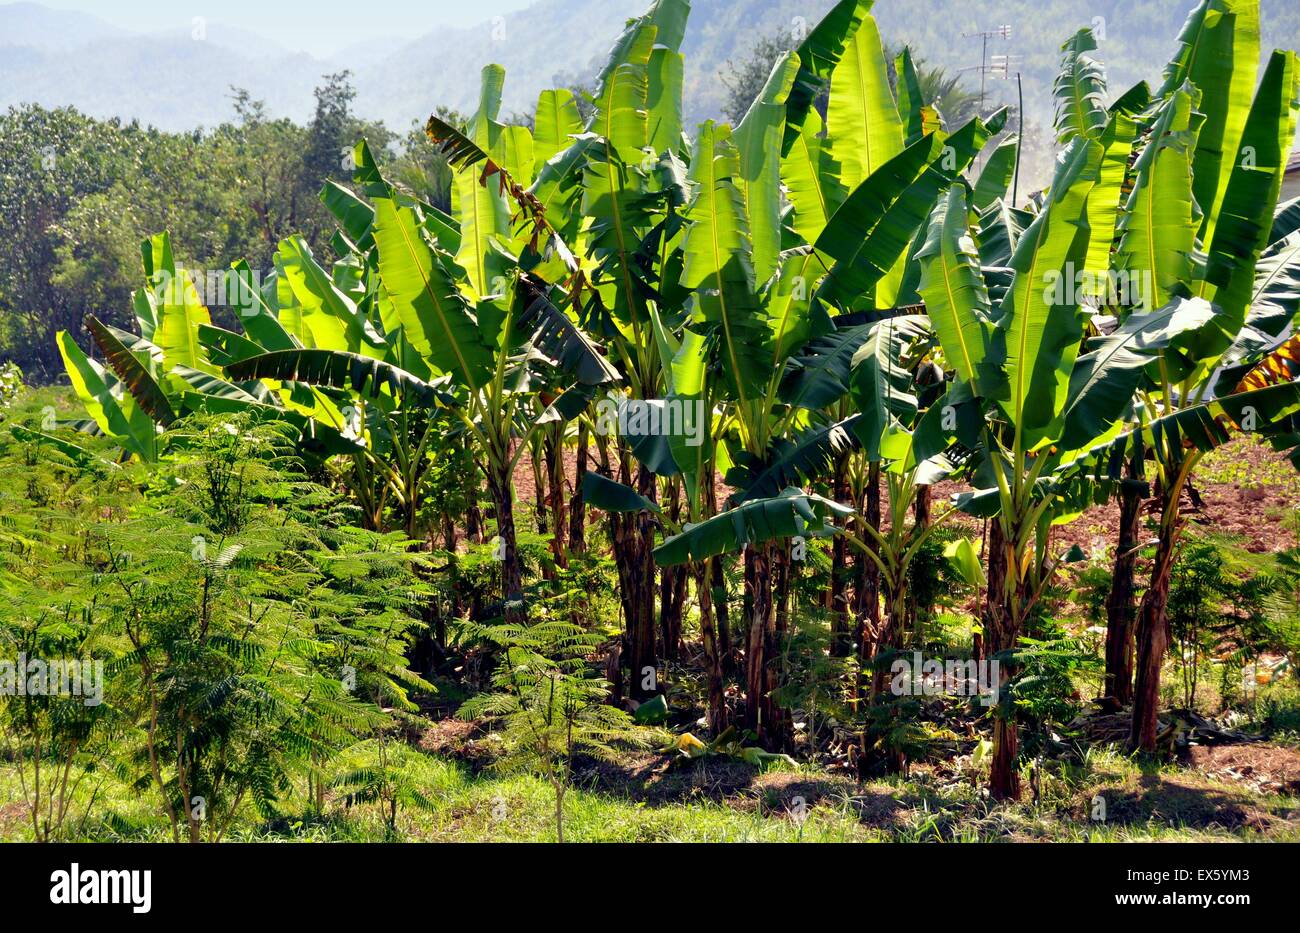 Kanchanaburi, Thailand: Banana Trees at Thai Farm Stock Photo - Alamy